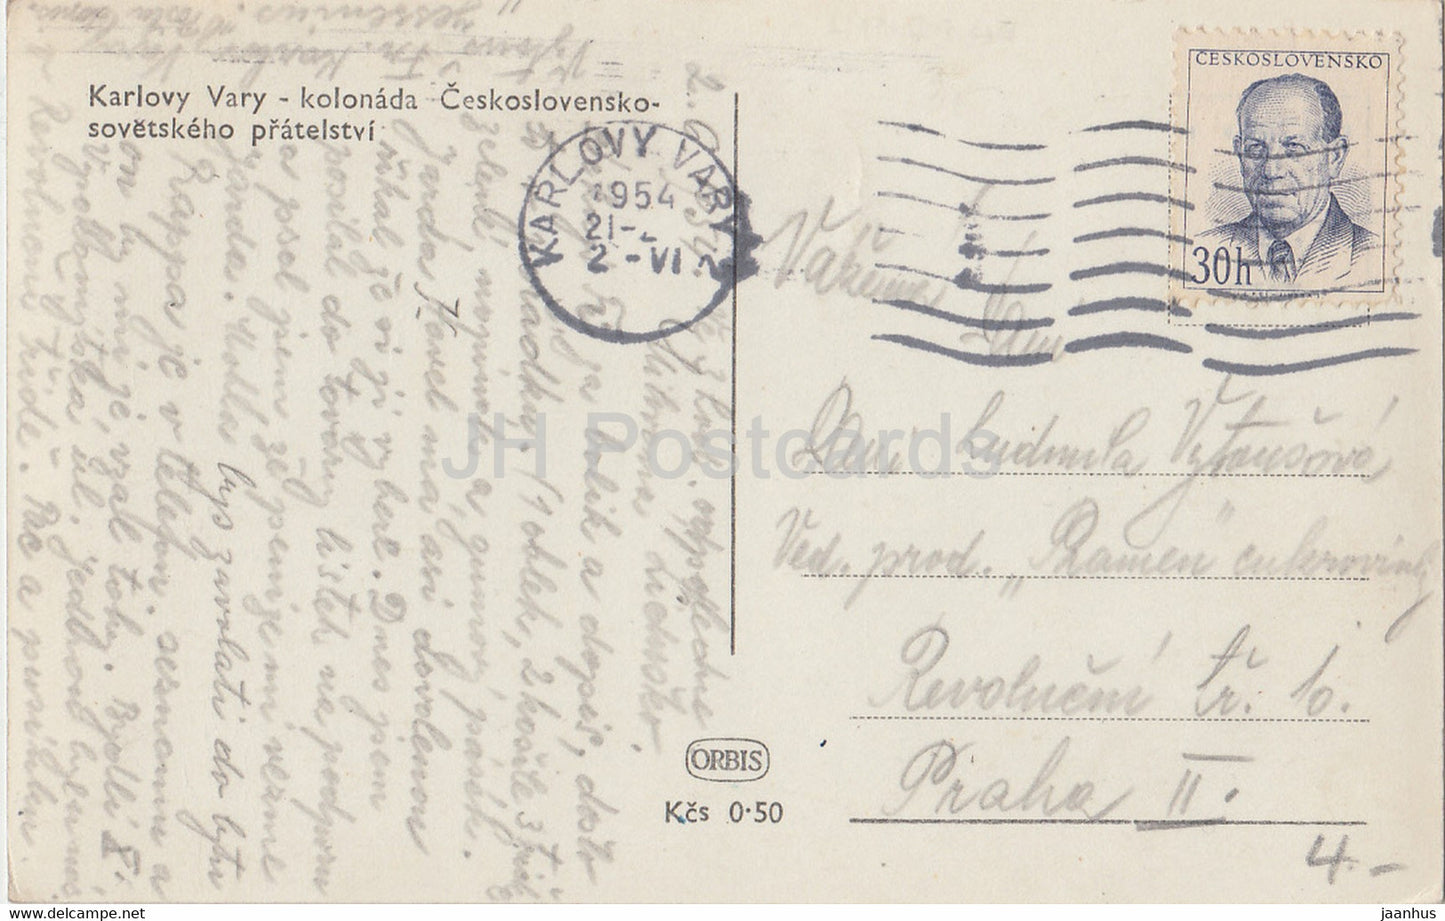 Karlovy Vary - Karlsbad - kolonada - Colonnade - carte postale ancienne - 1954 - Tchécoslovaquie - République tchèque - utilisé